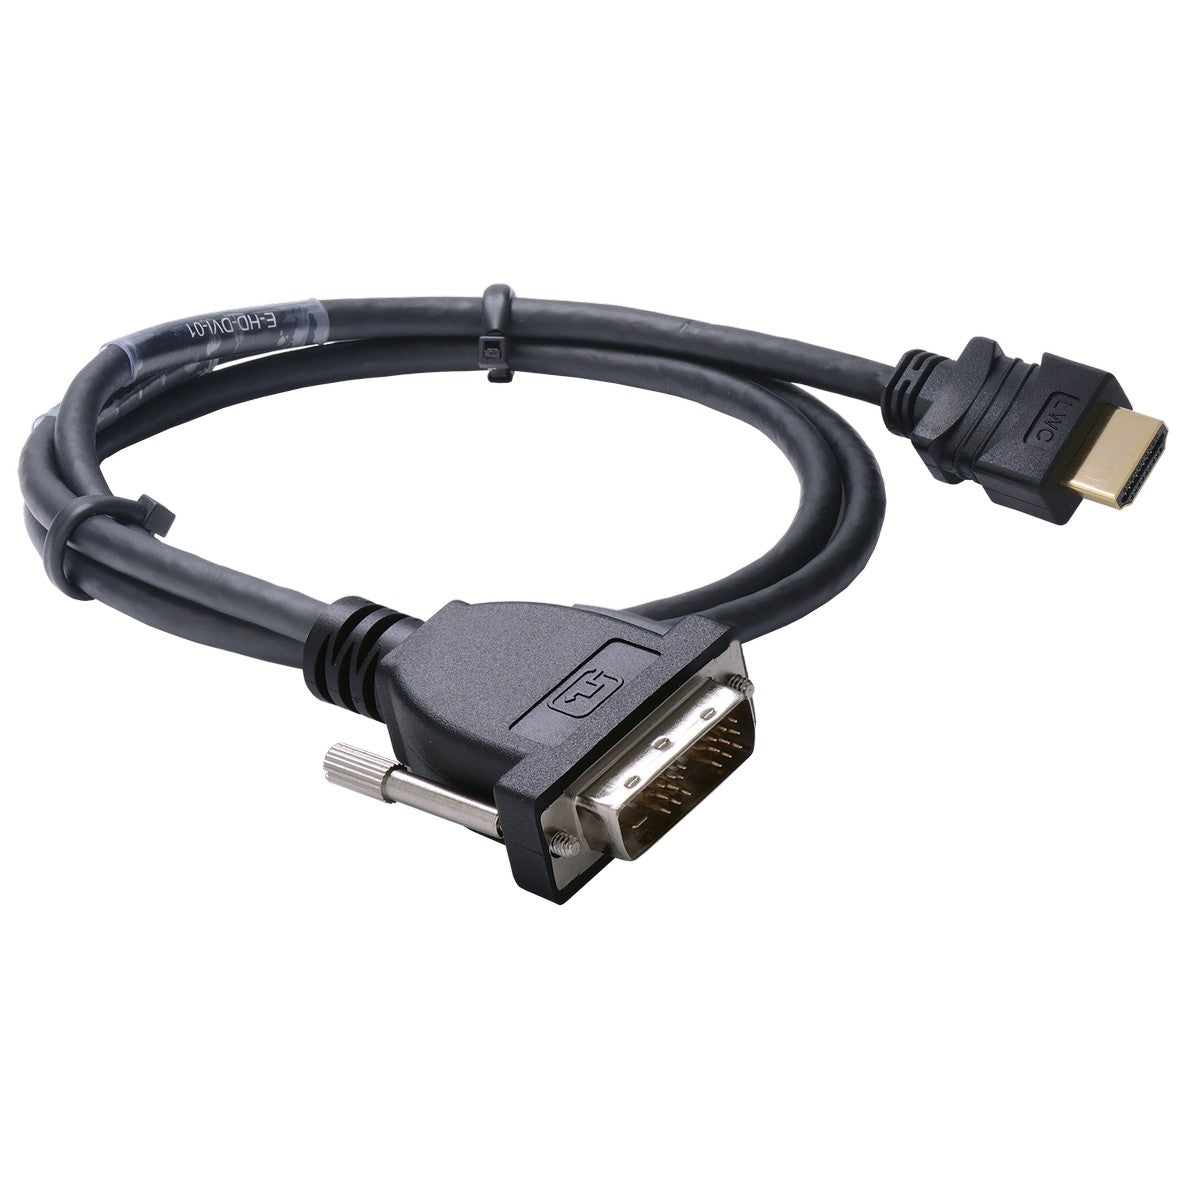 Liberty E-HD-DVI-12 | 40 inch Liberty Premium Molded HDMI to DVI Digital Cable